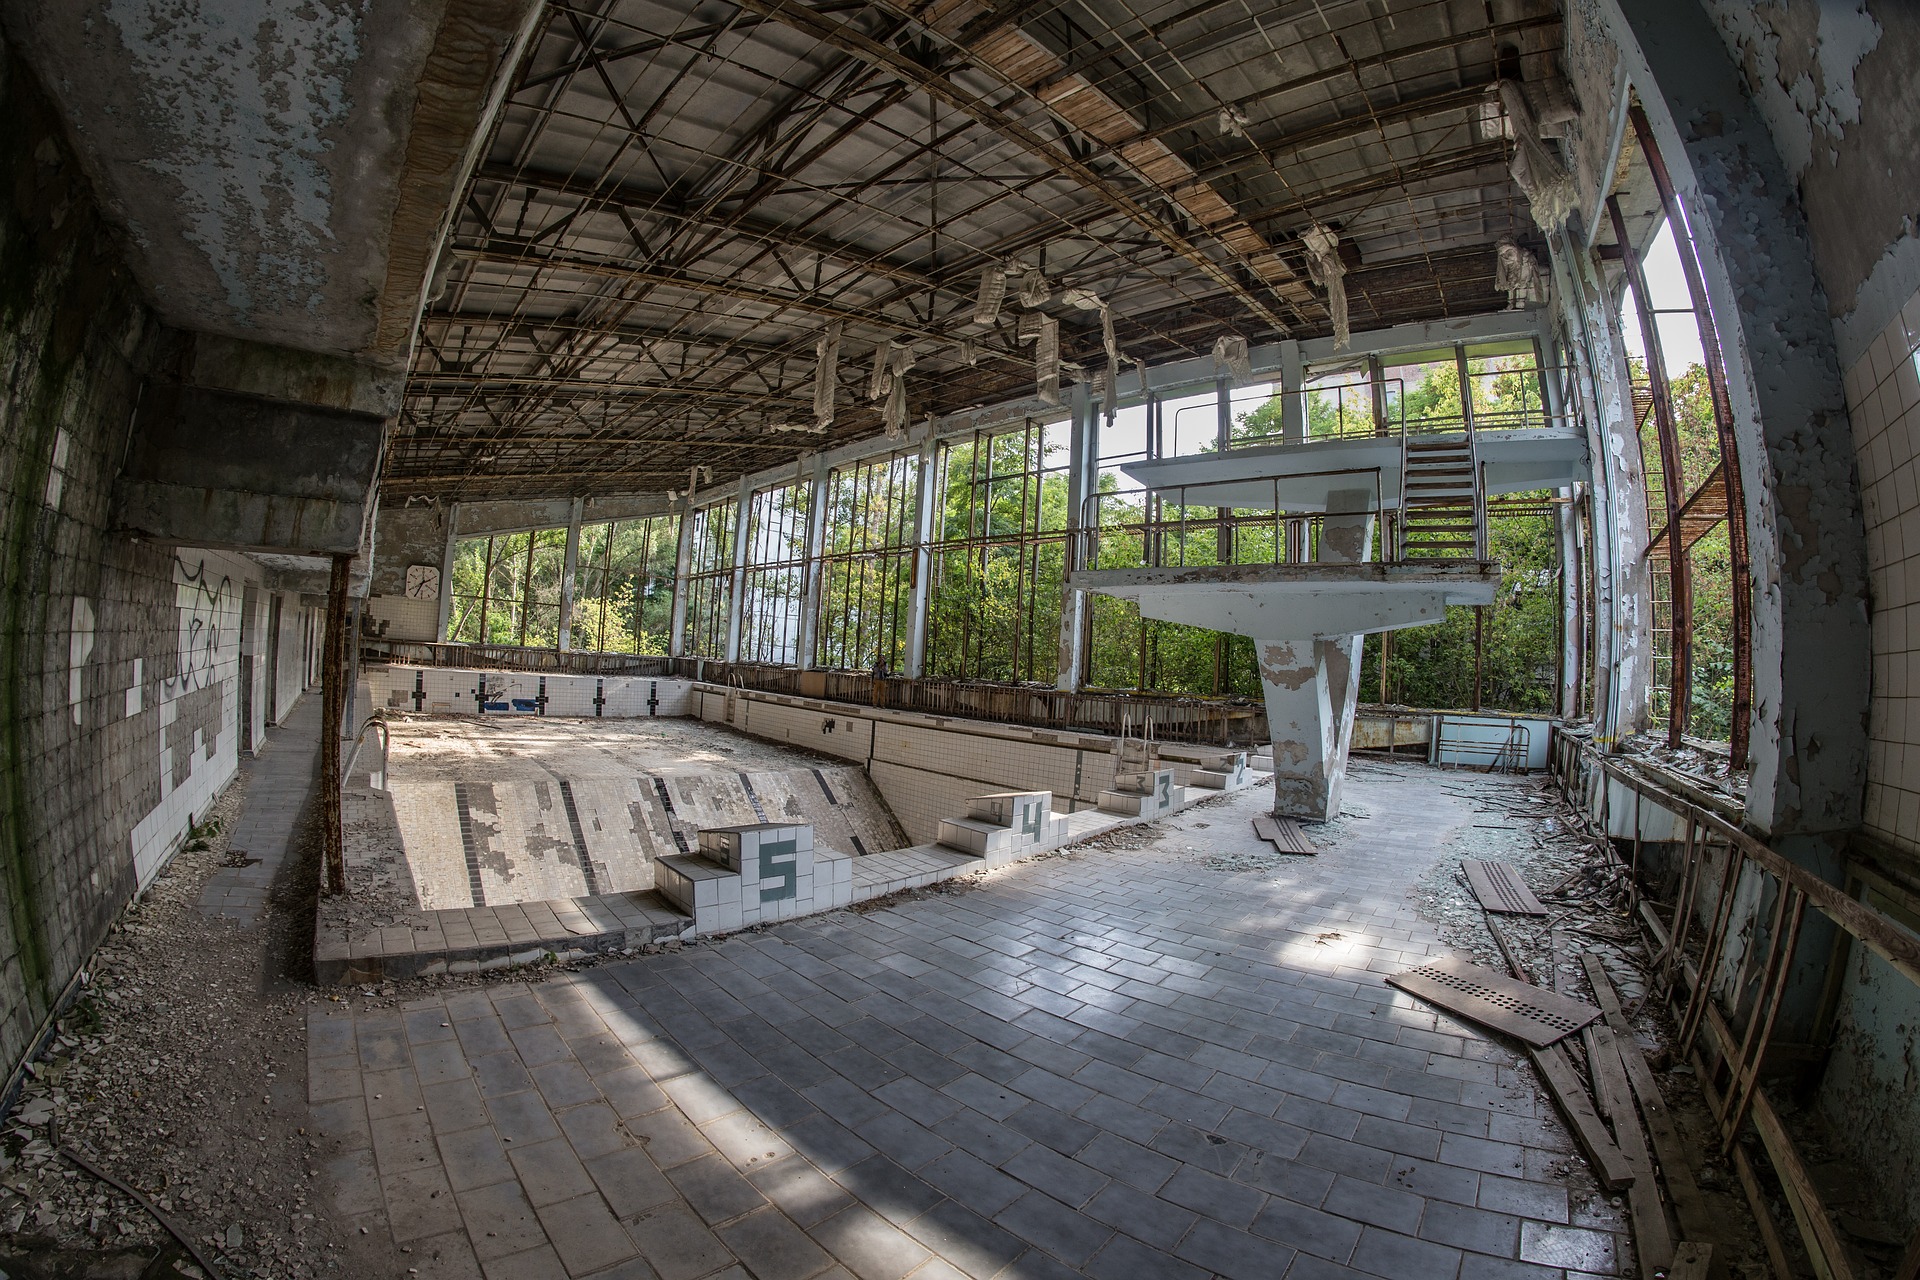 Автор сериала "Чернобыль" призвал приезжающих на ЧАЭС туристов уважать жертв катастрофы